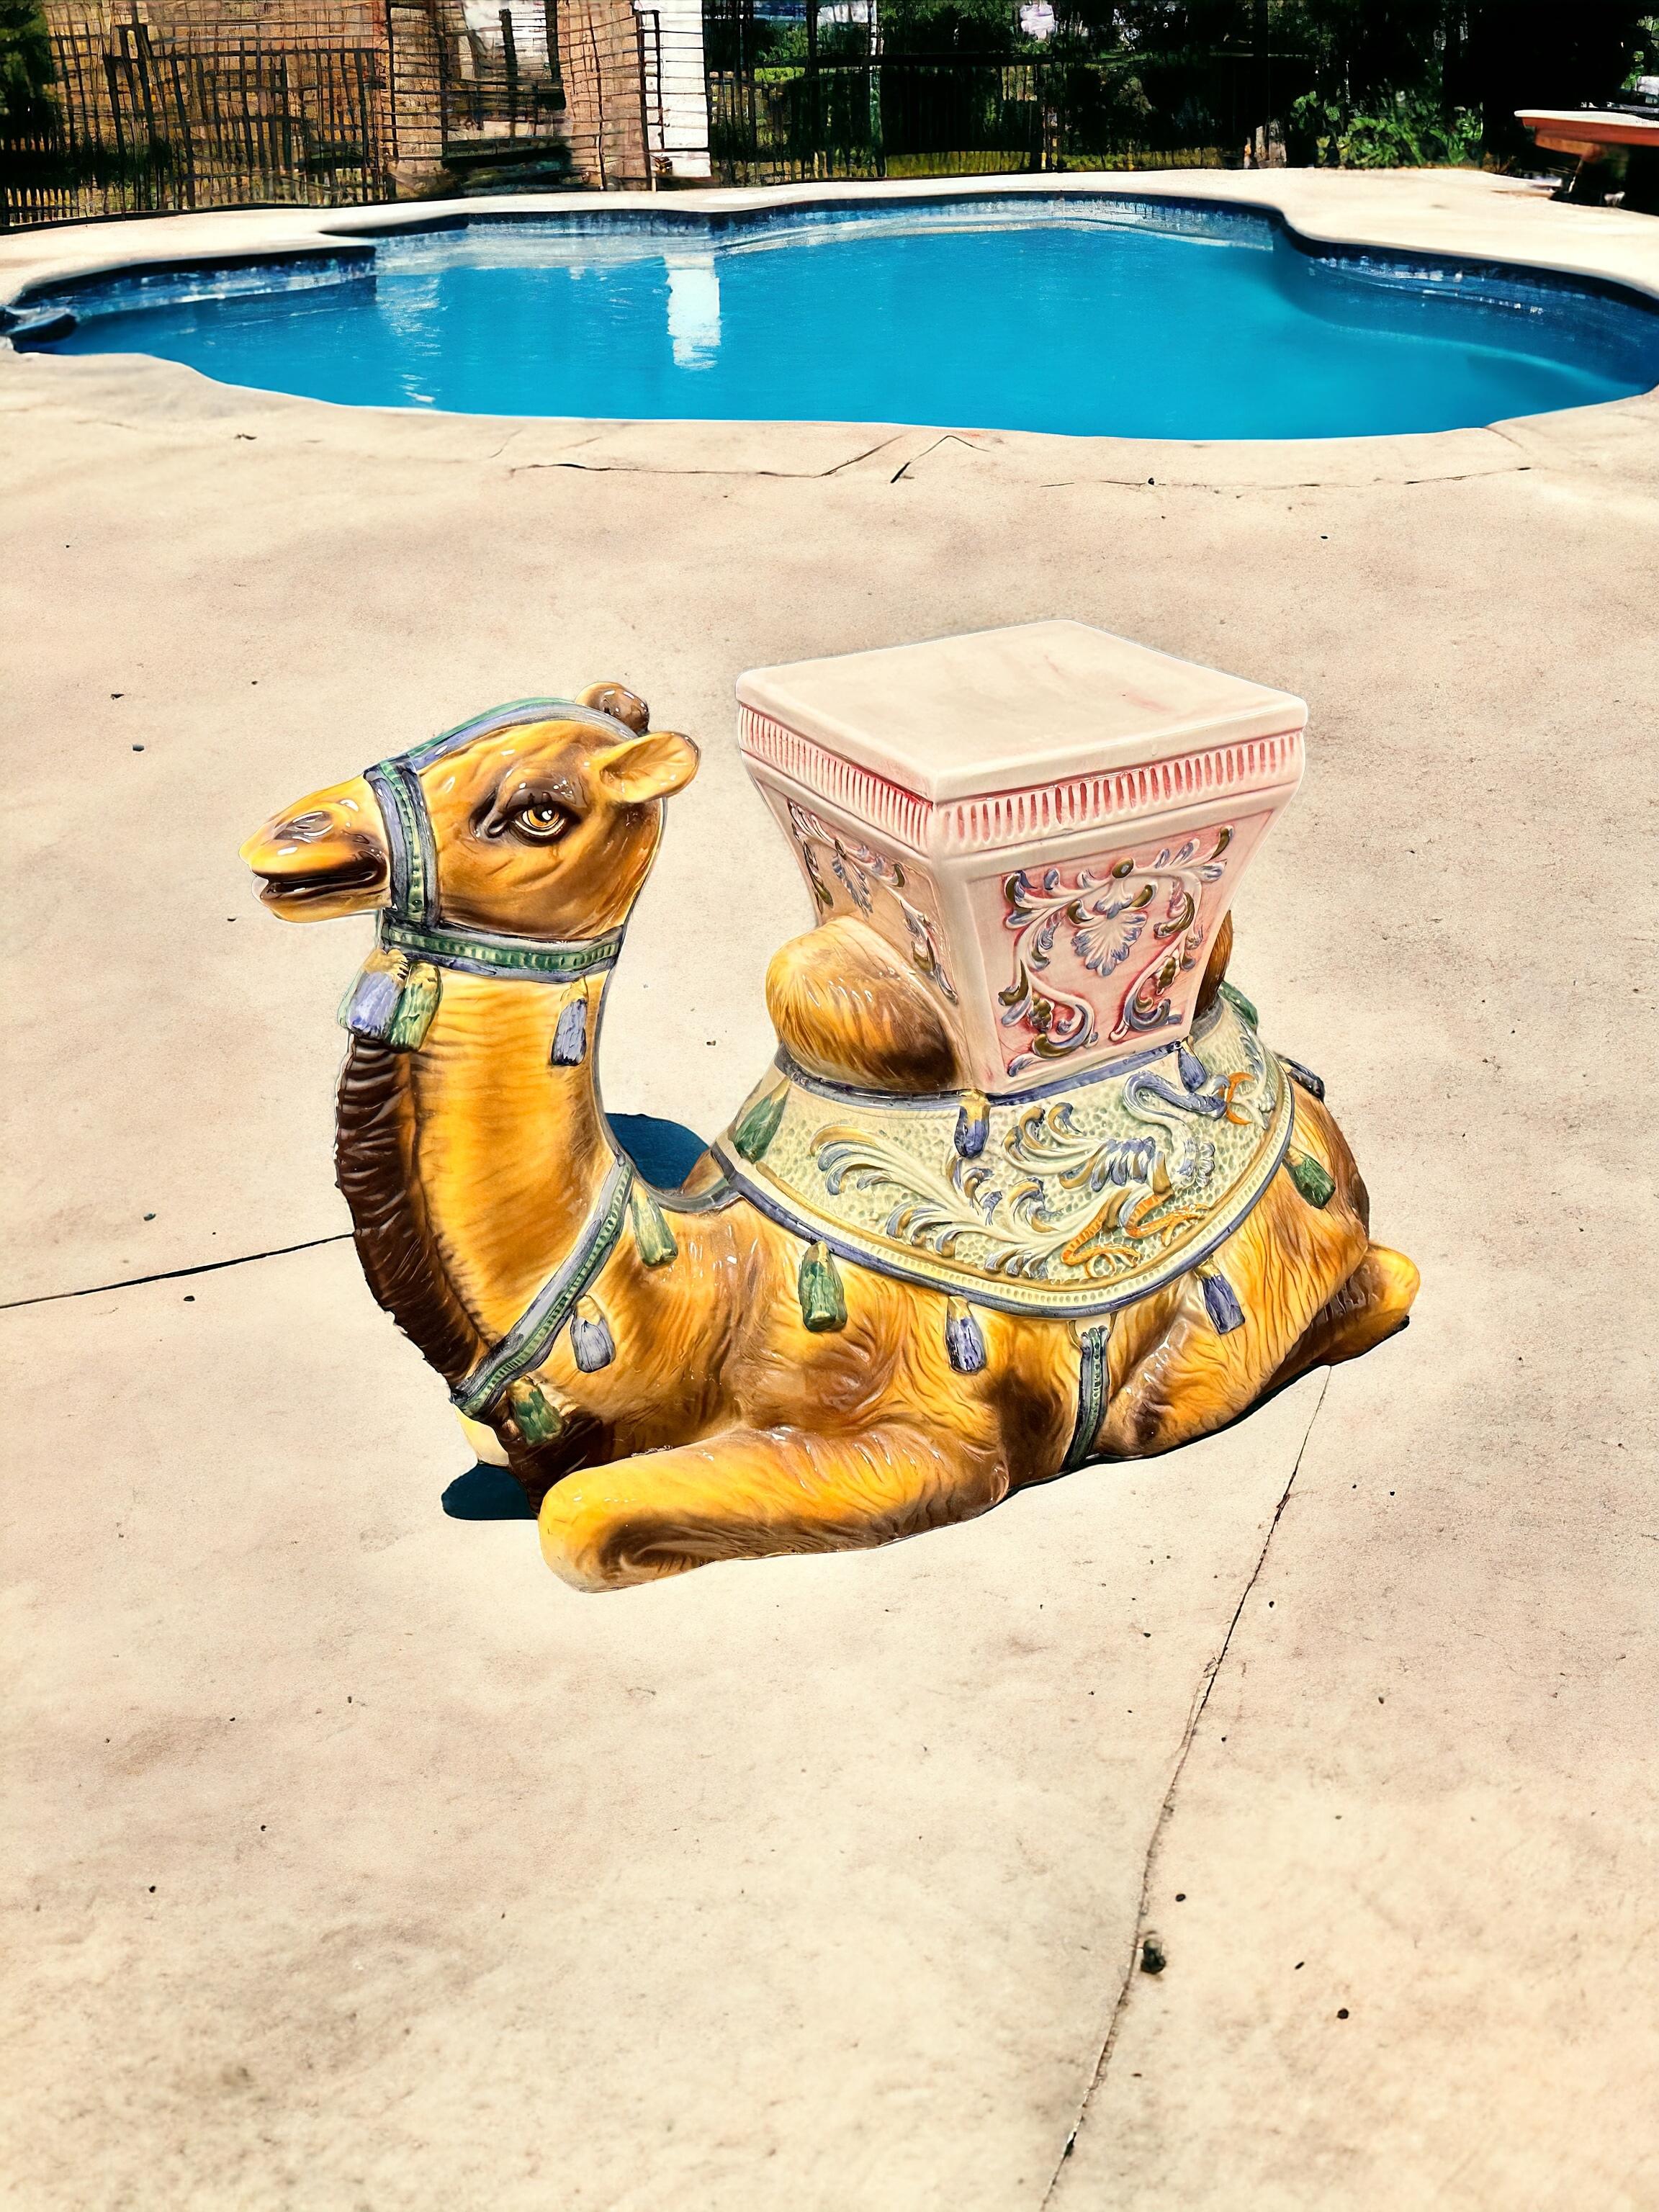 Tabouret de jardin, siège de pot de fleurs ou table d'appoint en céramique représentant un chameau, datant du milieu du 20e siècle. Céramique fabriquée à la main. Une belle addition à votre maison, votre patio ou votre jardin. D'une taille étonnante